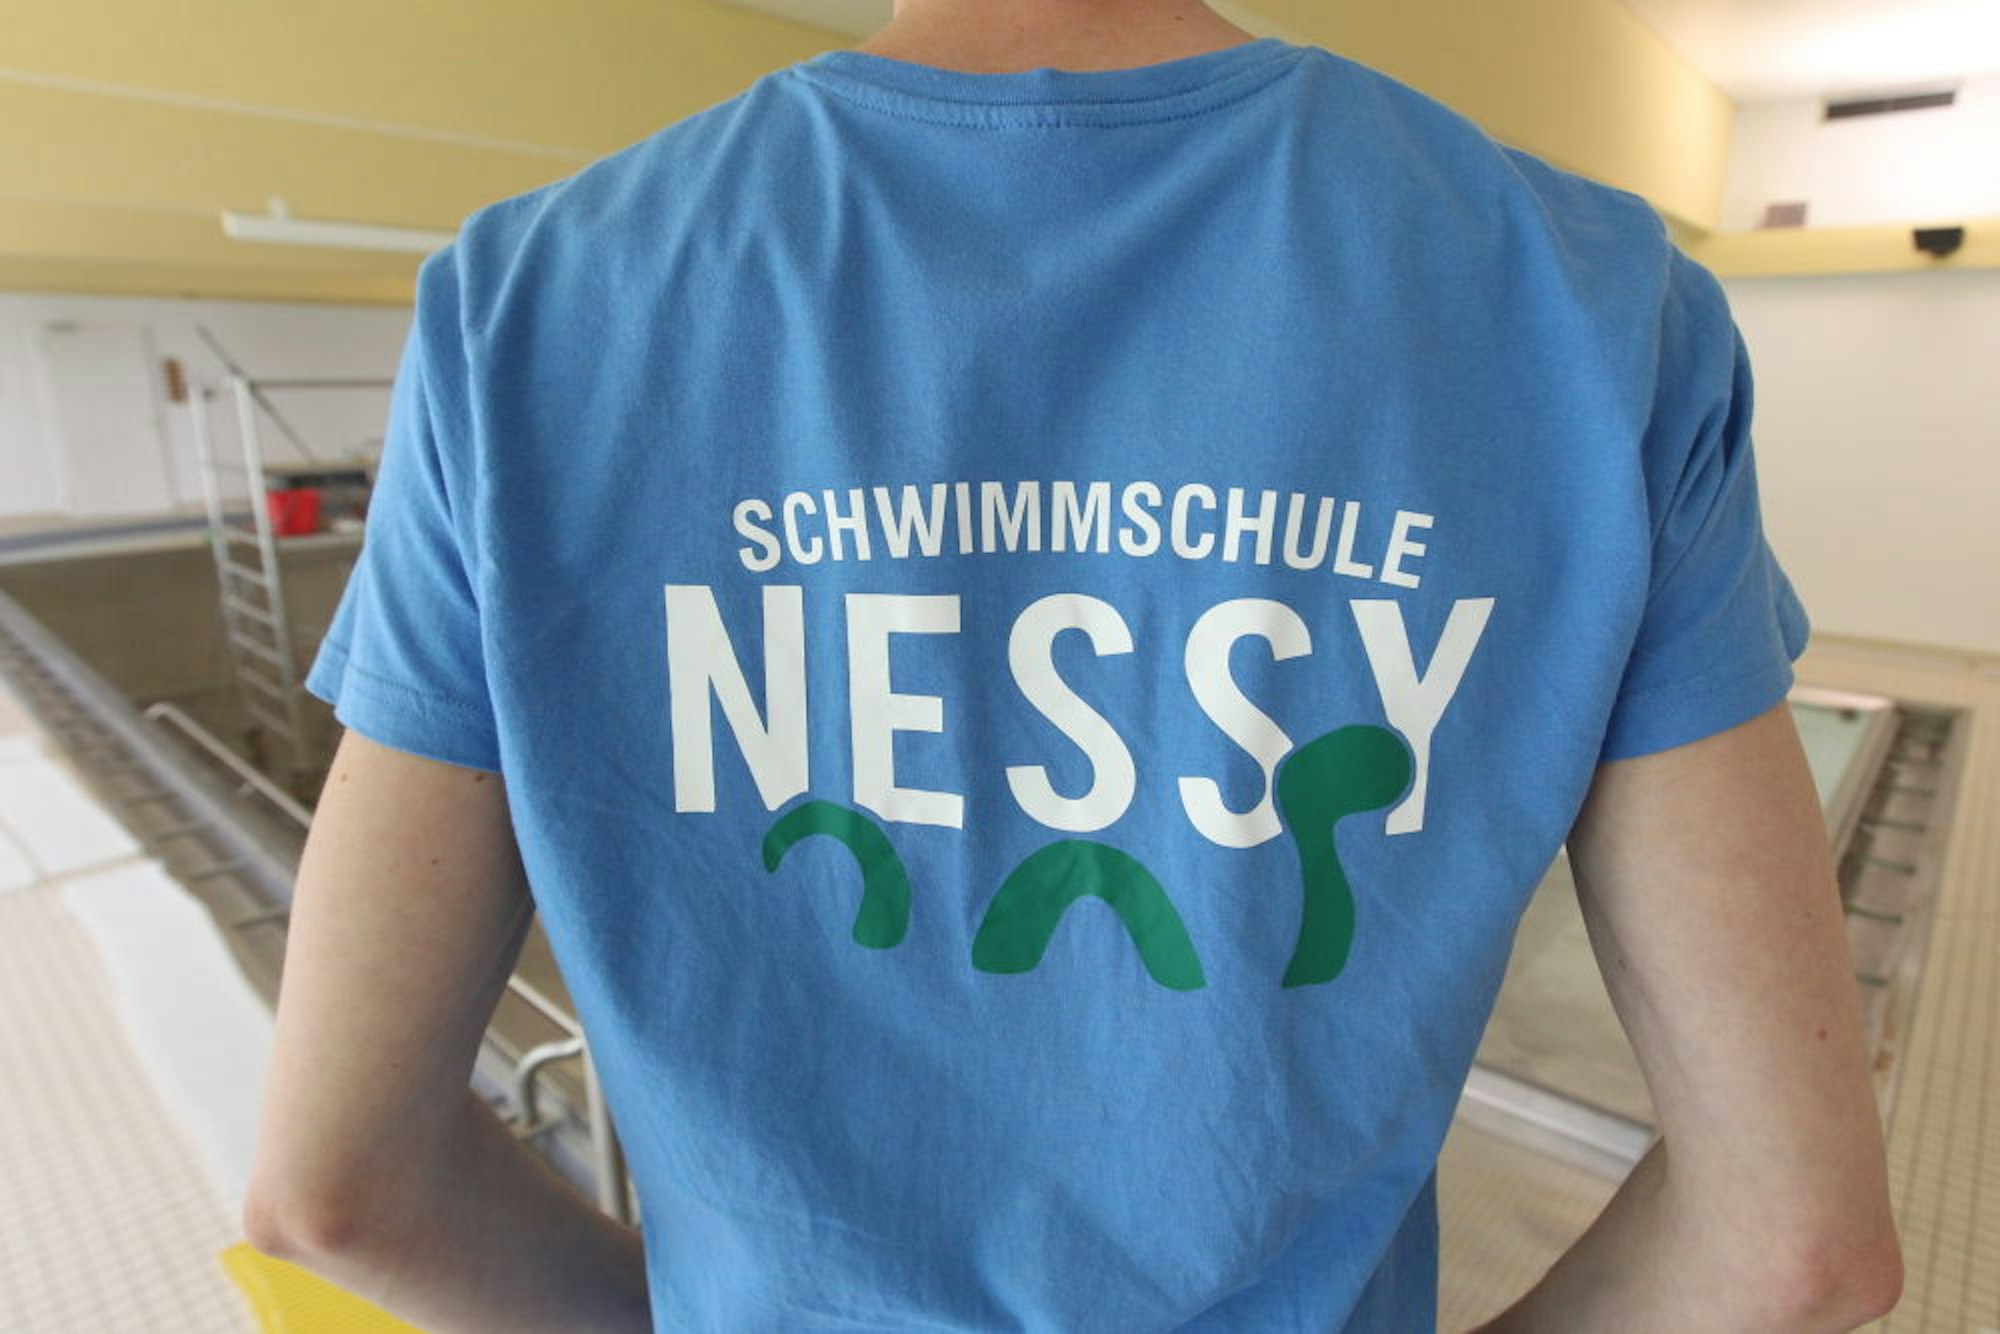 Nach dem sagenhaften Seeungeheuer von Loch Ness haben die beiden Gründer ihre Schwimmschule benannt.